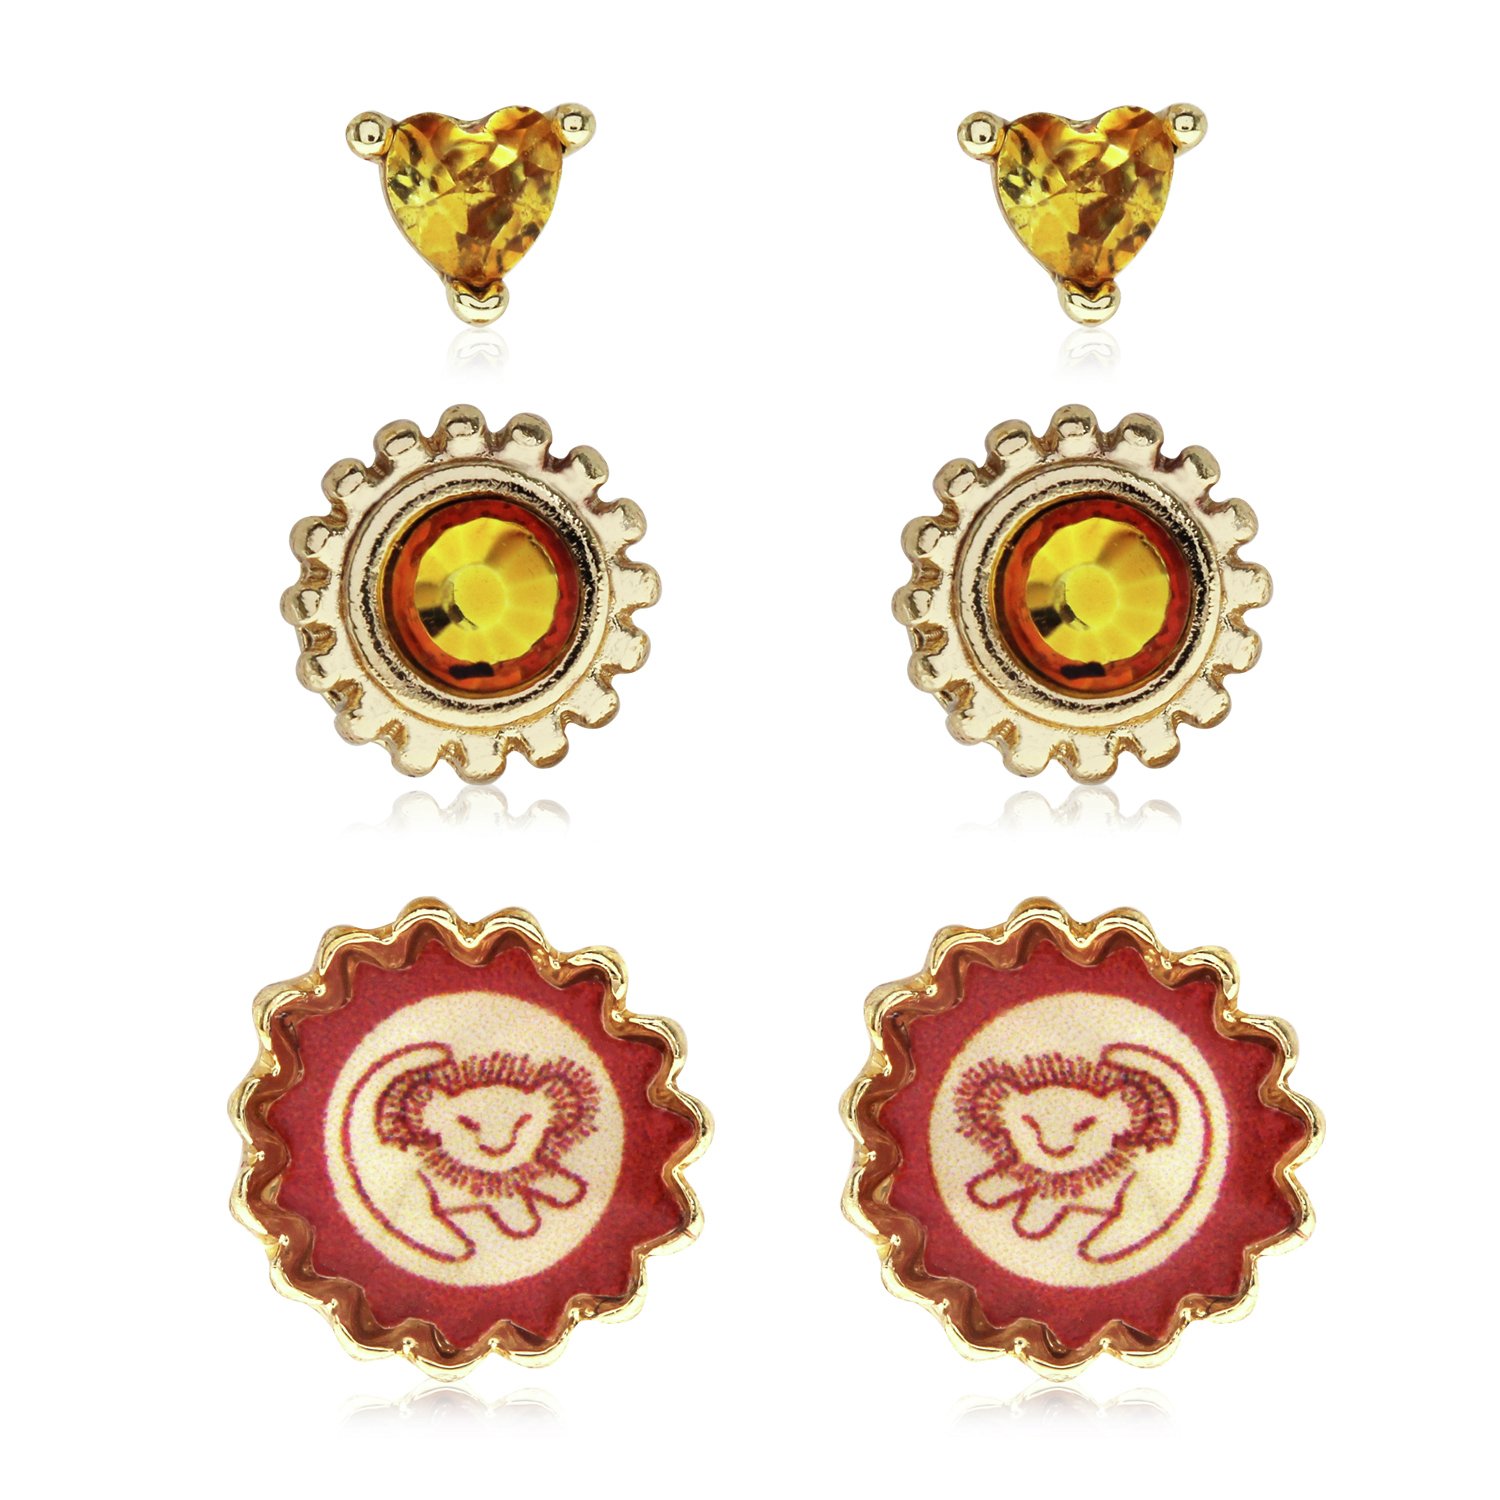 Disney Gold Coloured Lion King Earrings - Set of 3